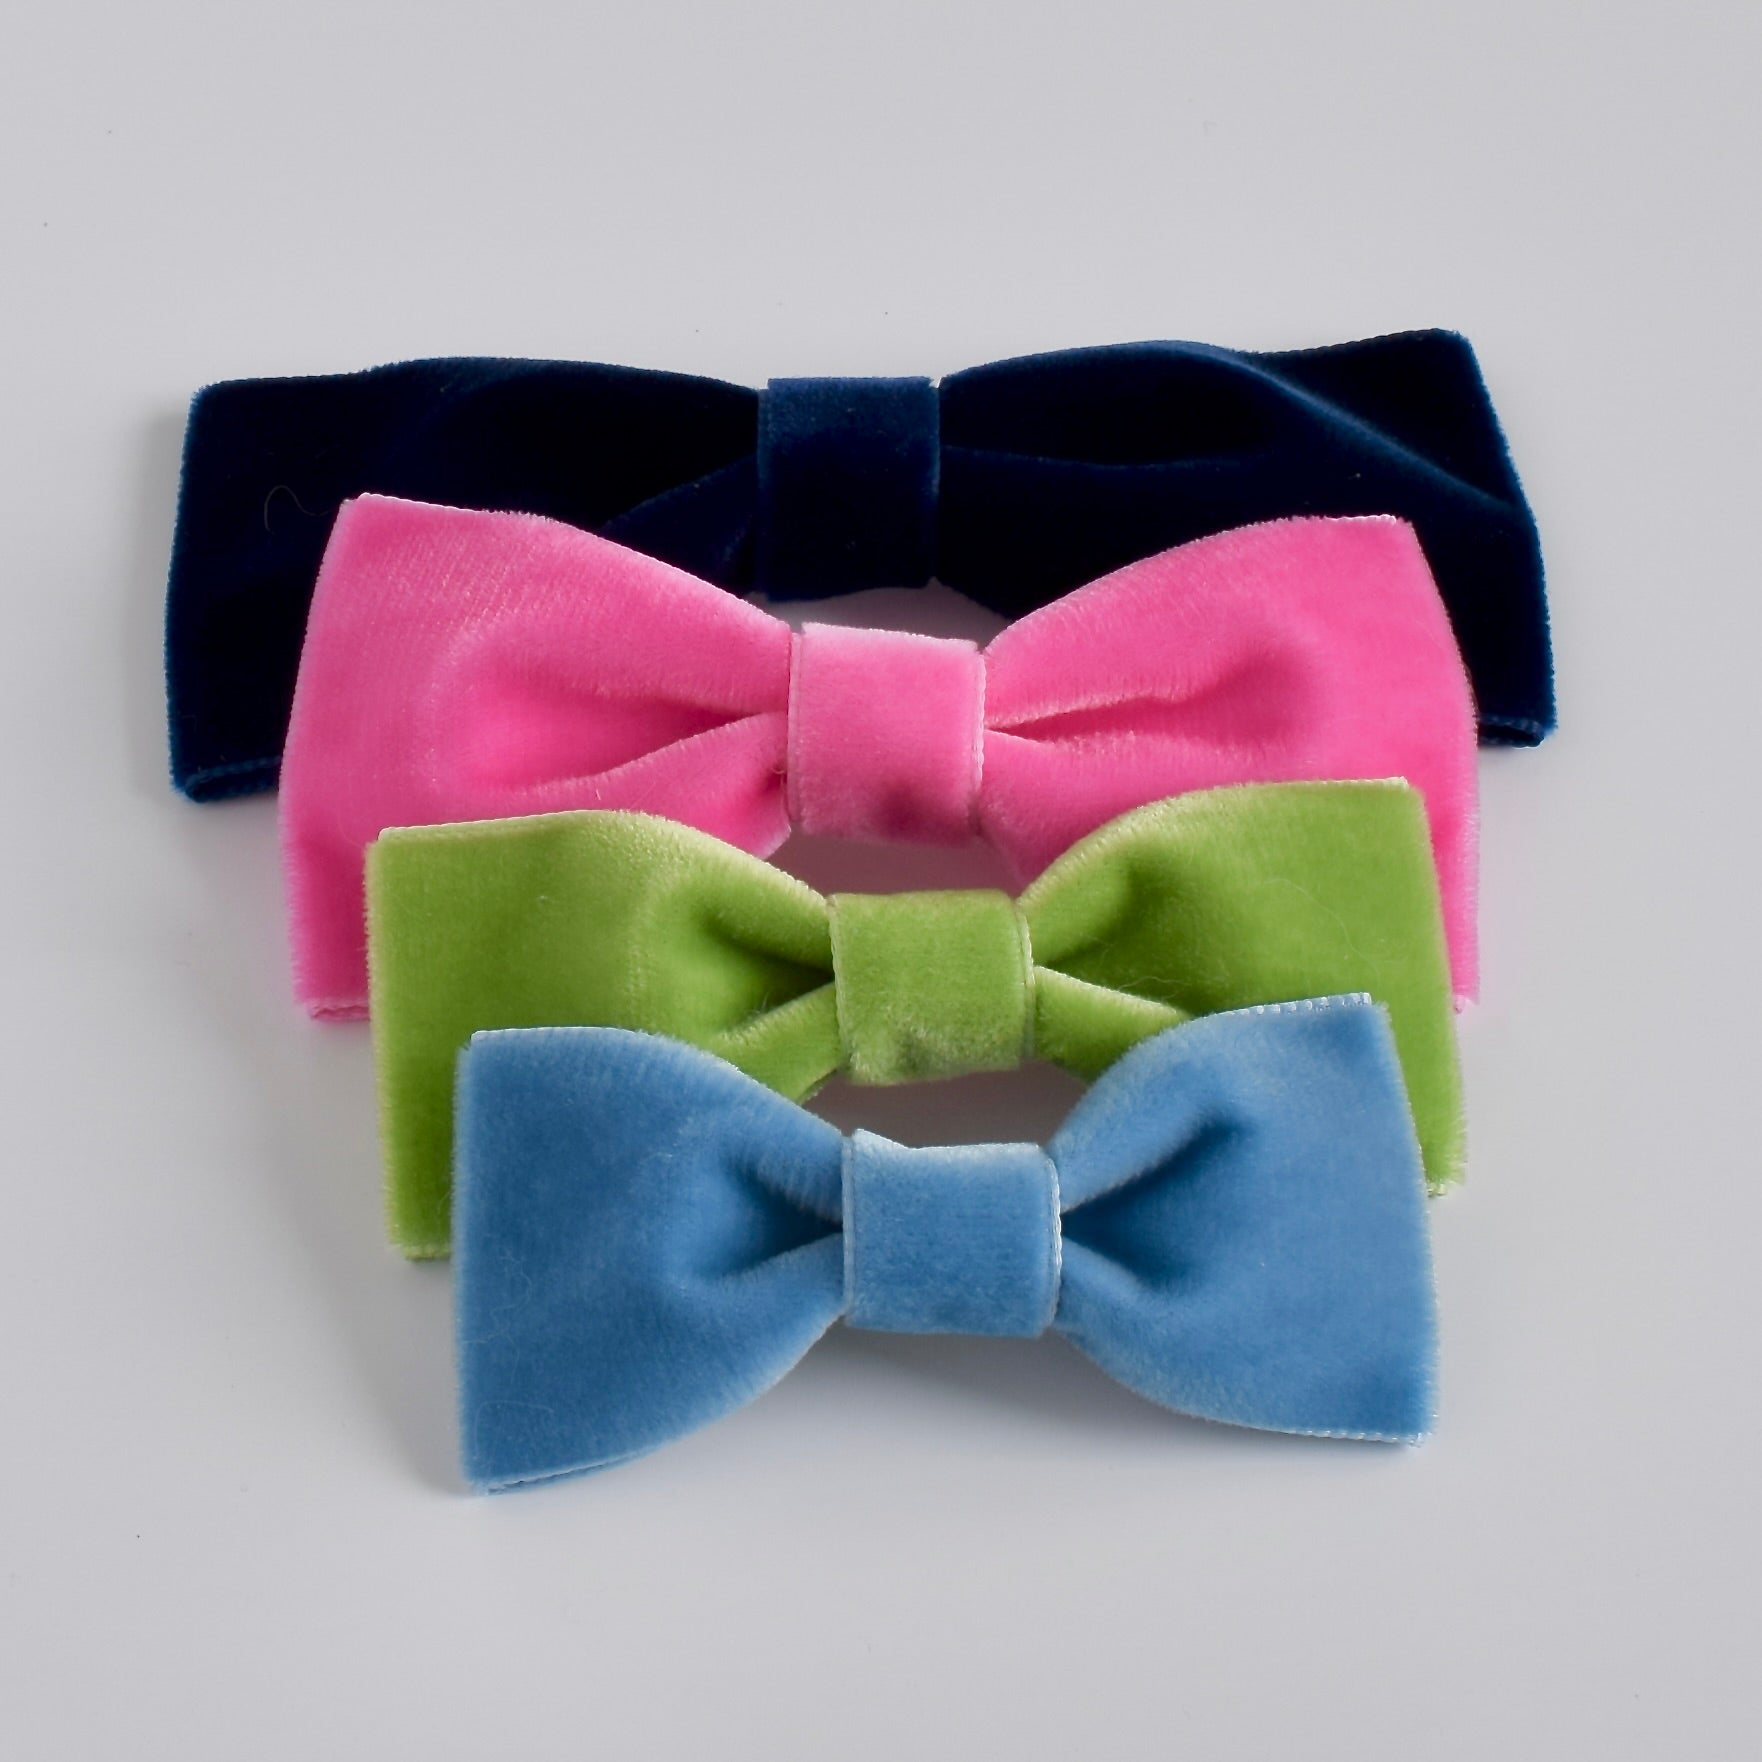 velvet bow ties in all sizes.